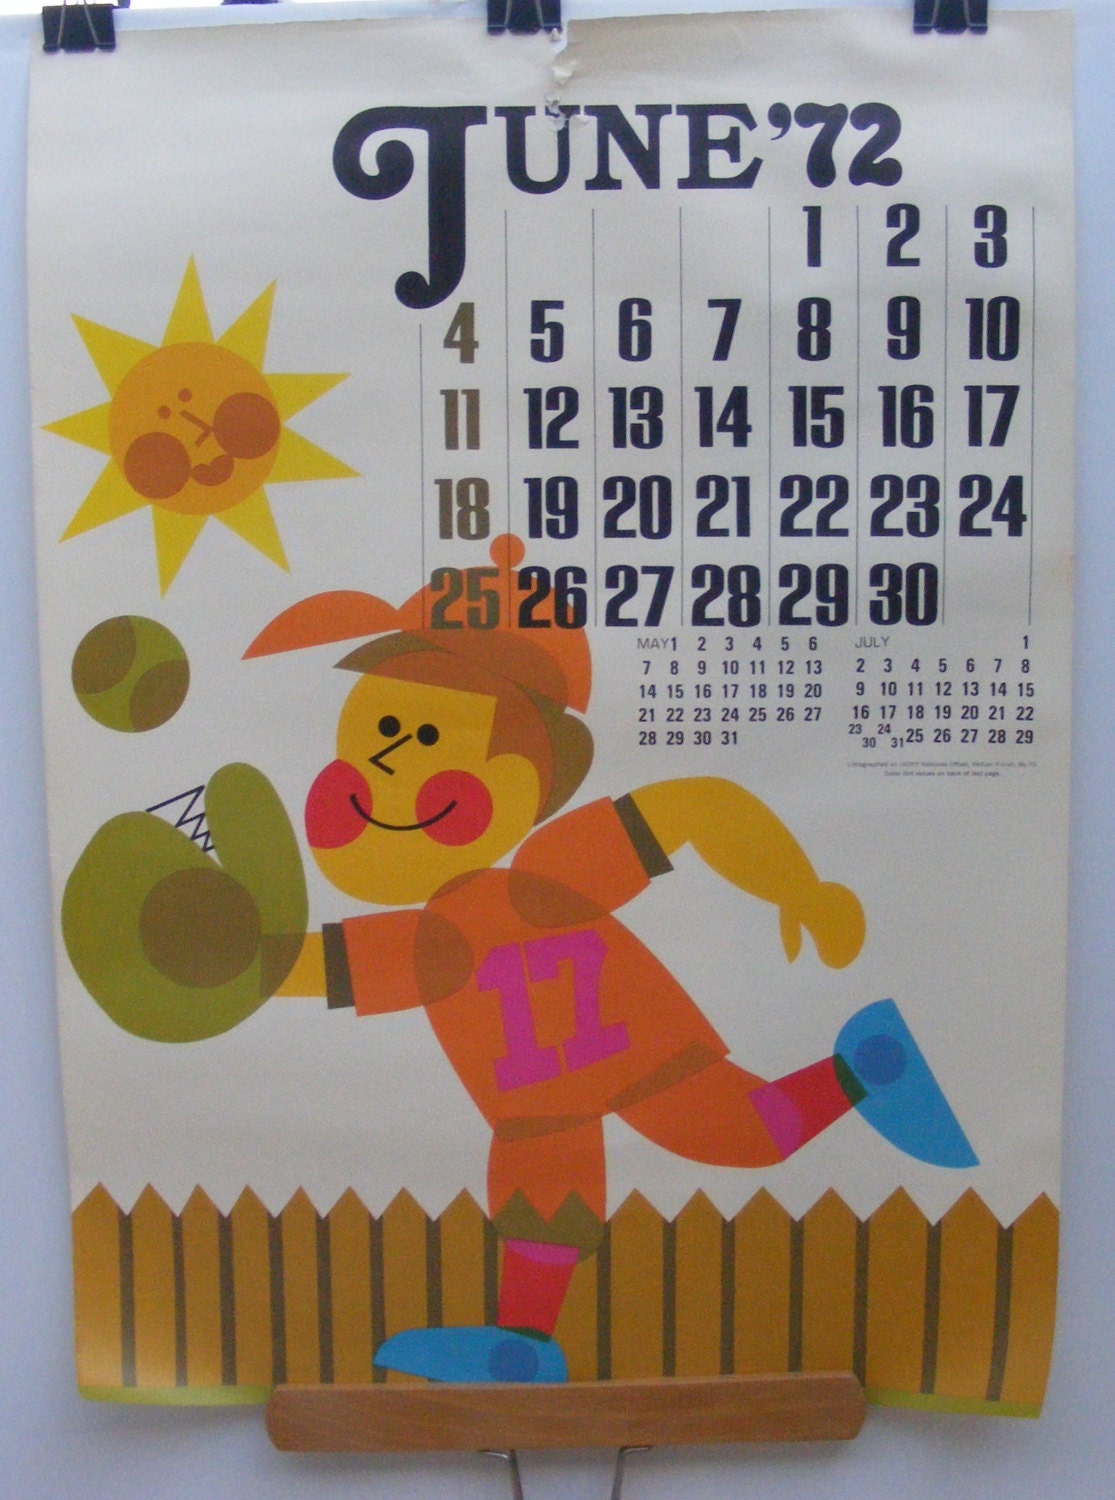 Vintage June 1972 calendar poster